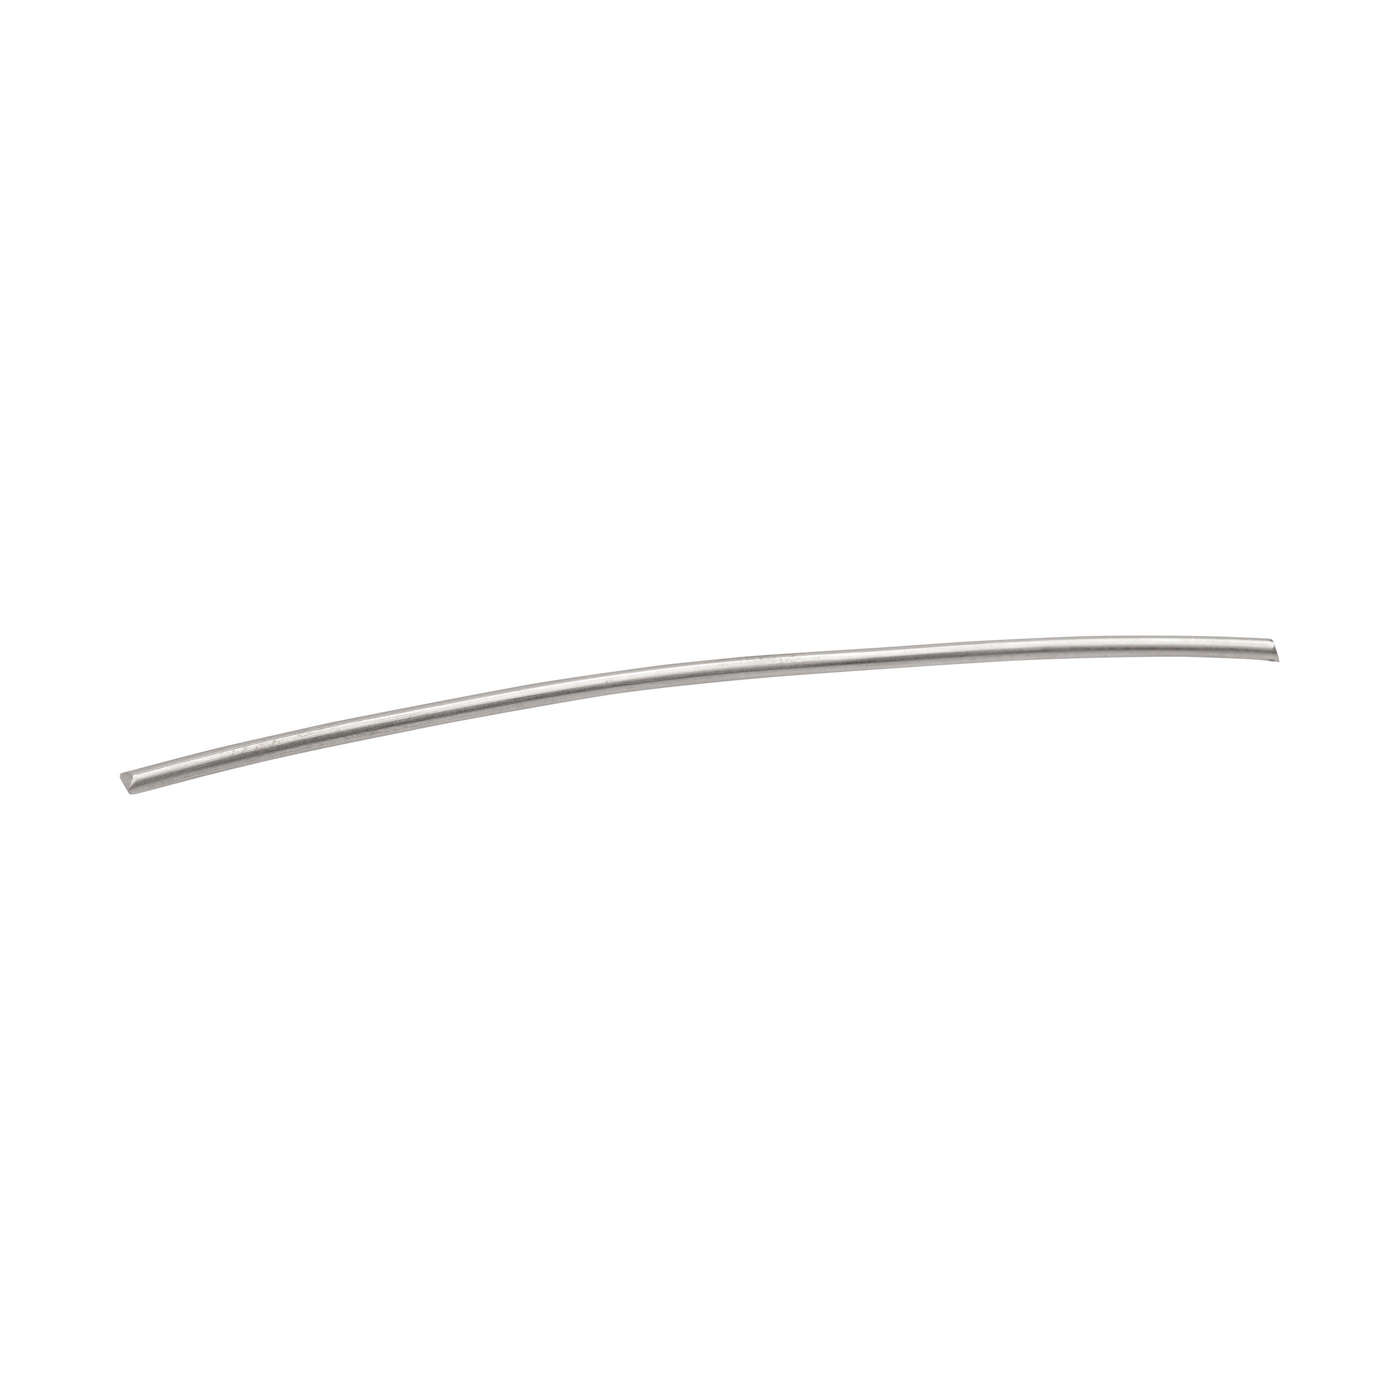 Round Wire, 590WG, ø 2 mm, Length 10 cm - 1 piece